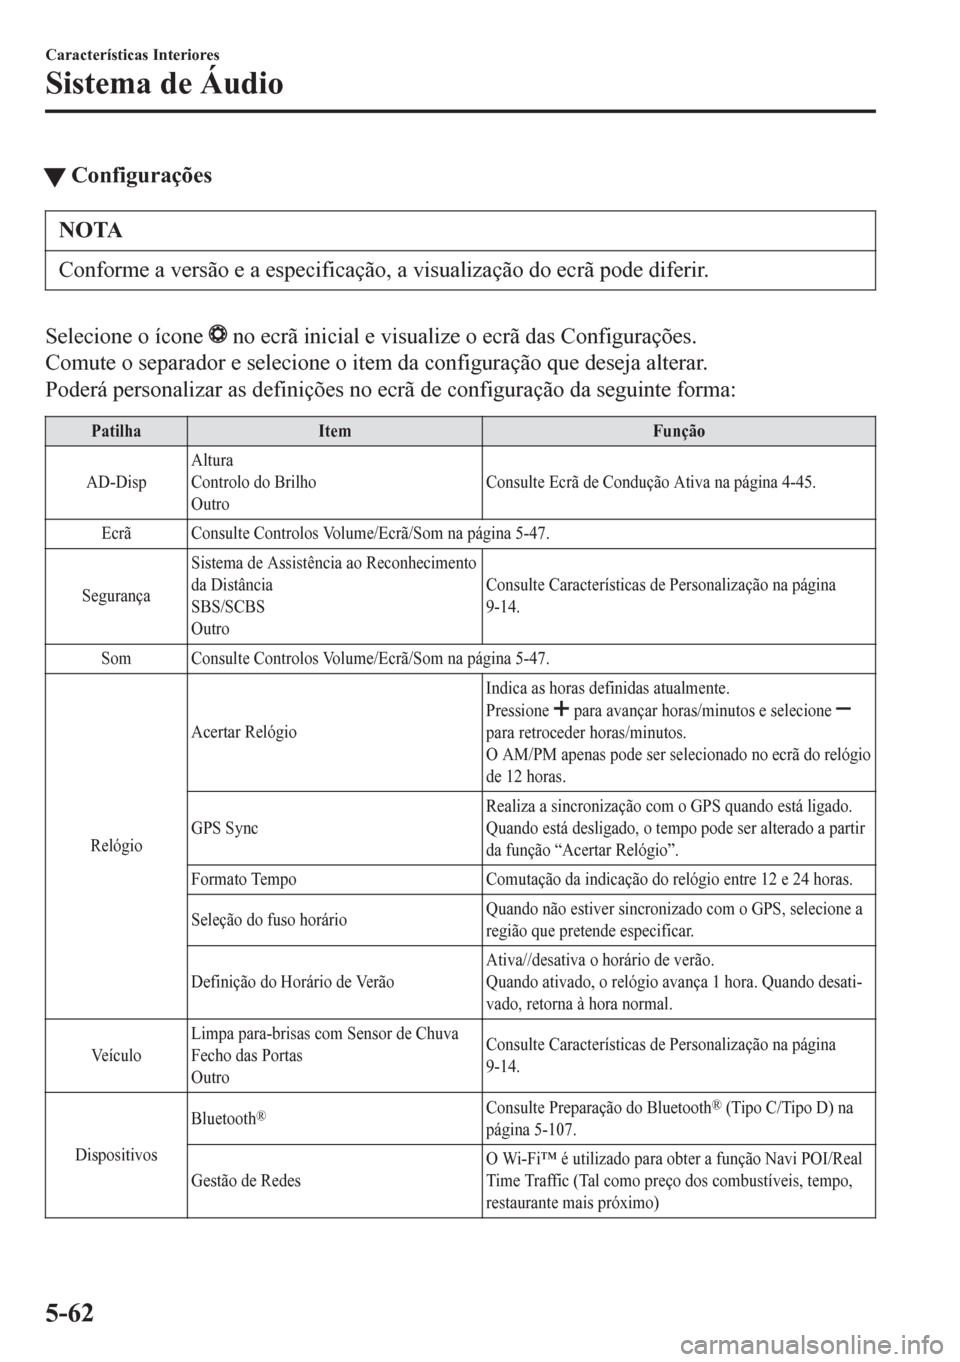 MAZDA MODEL 6 2016  Manual do proprietário (in Portuguese) tConfigurações
NOTA
Conforme a versão e a especificação, a visualização do ecrã pode diferir.
Selecione o ícone  no ecrã inicial e visualize o ecrã das Configurações.
Comute o separador e